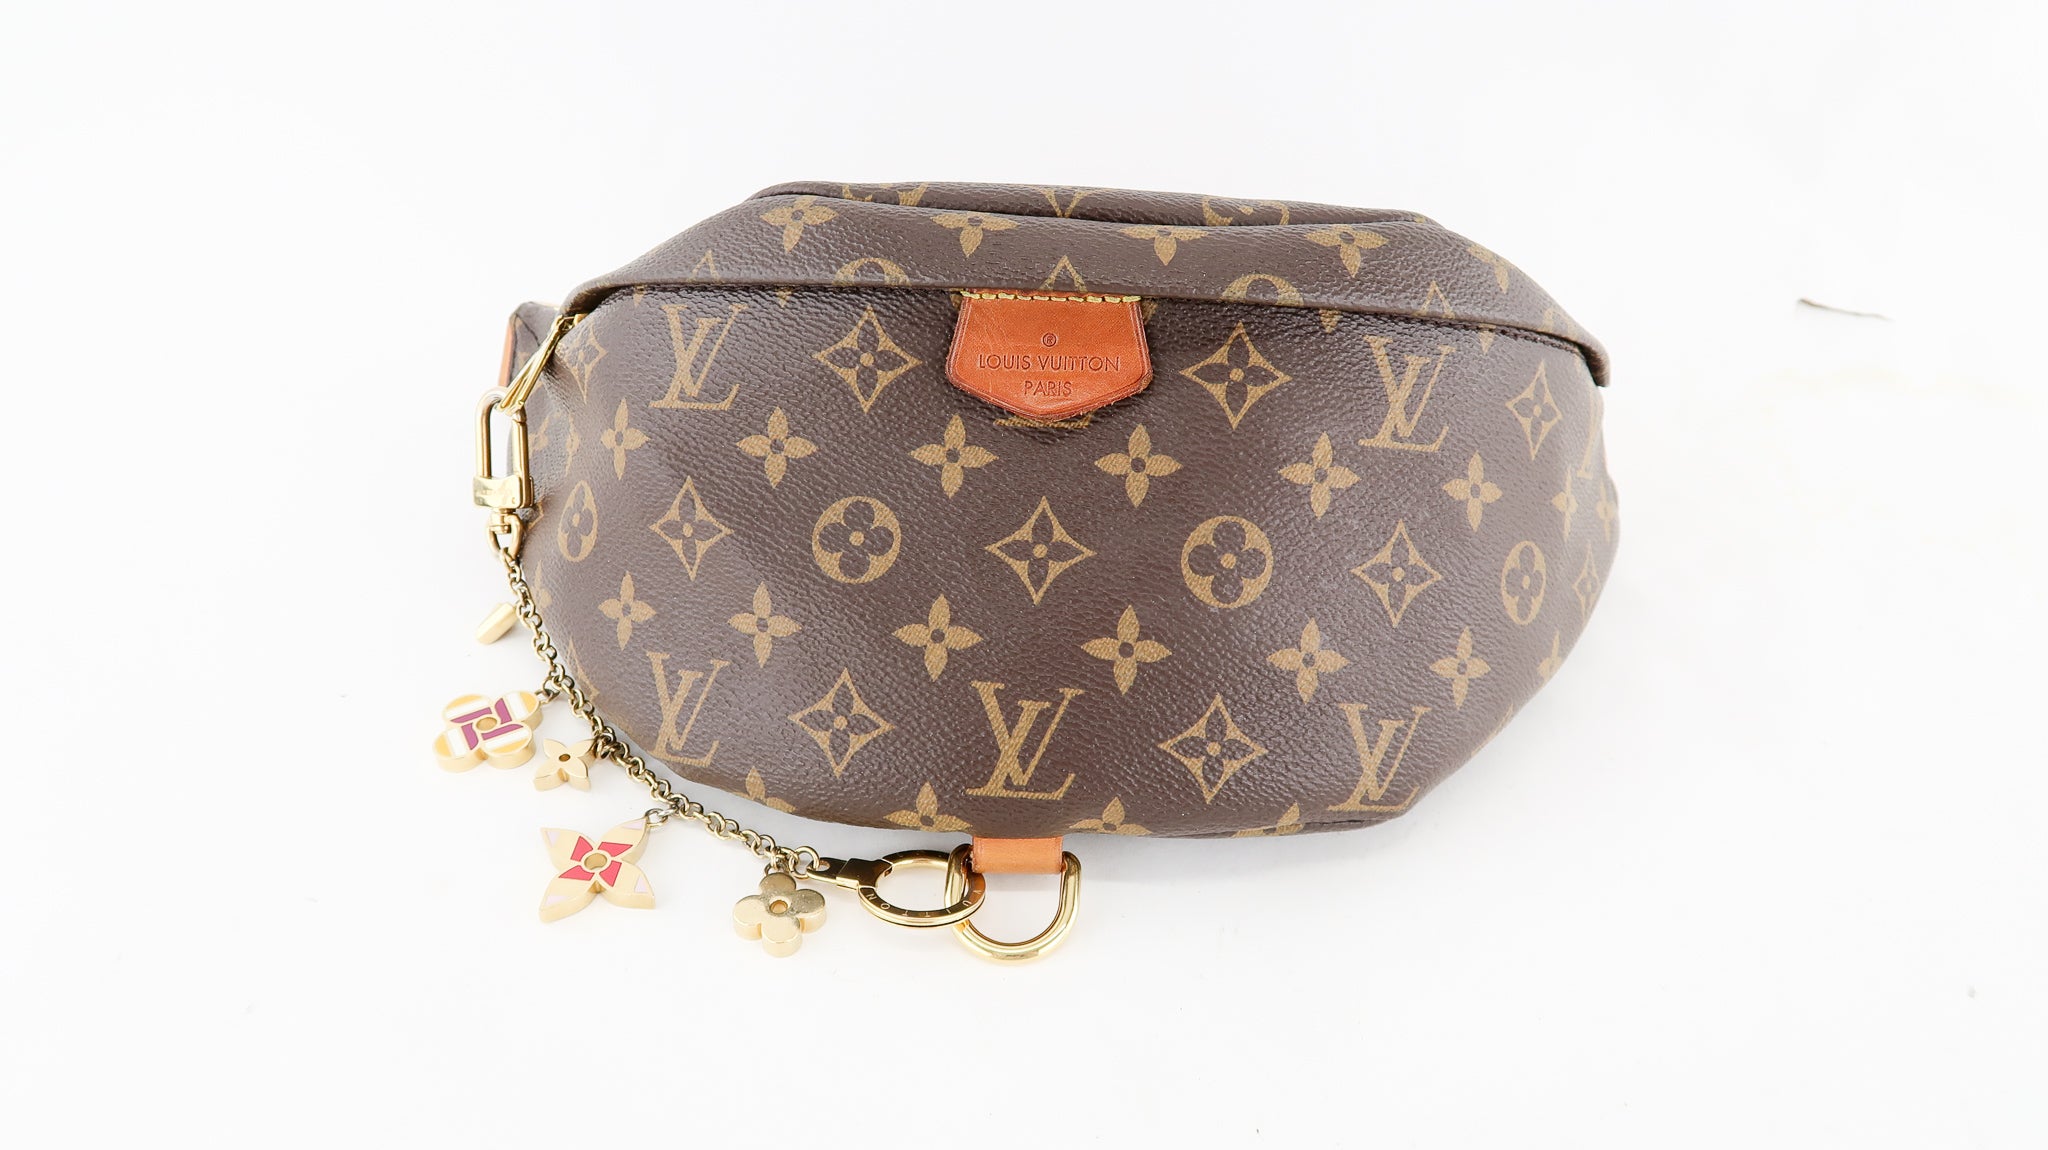 Louis Vuitton Bag Charm 